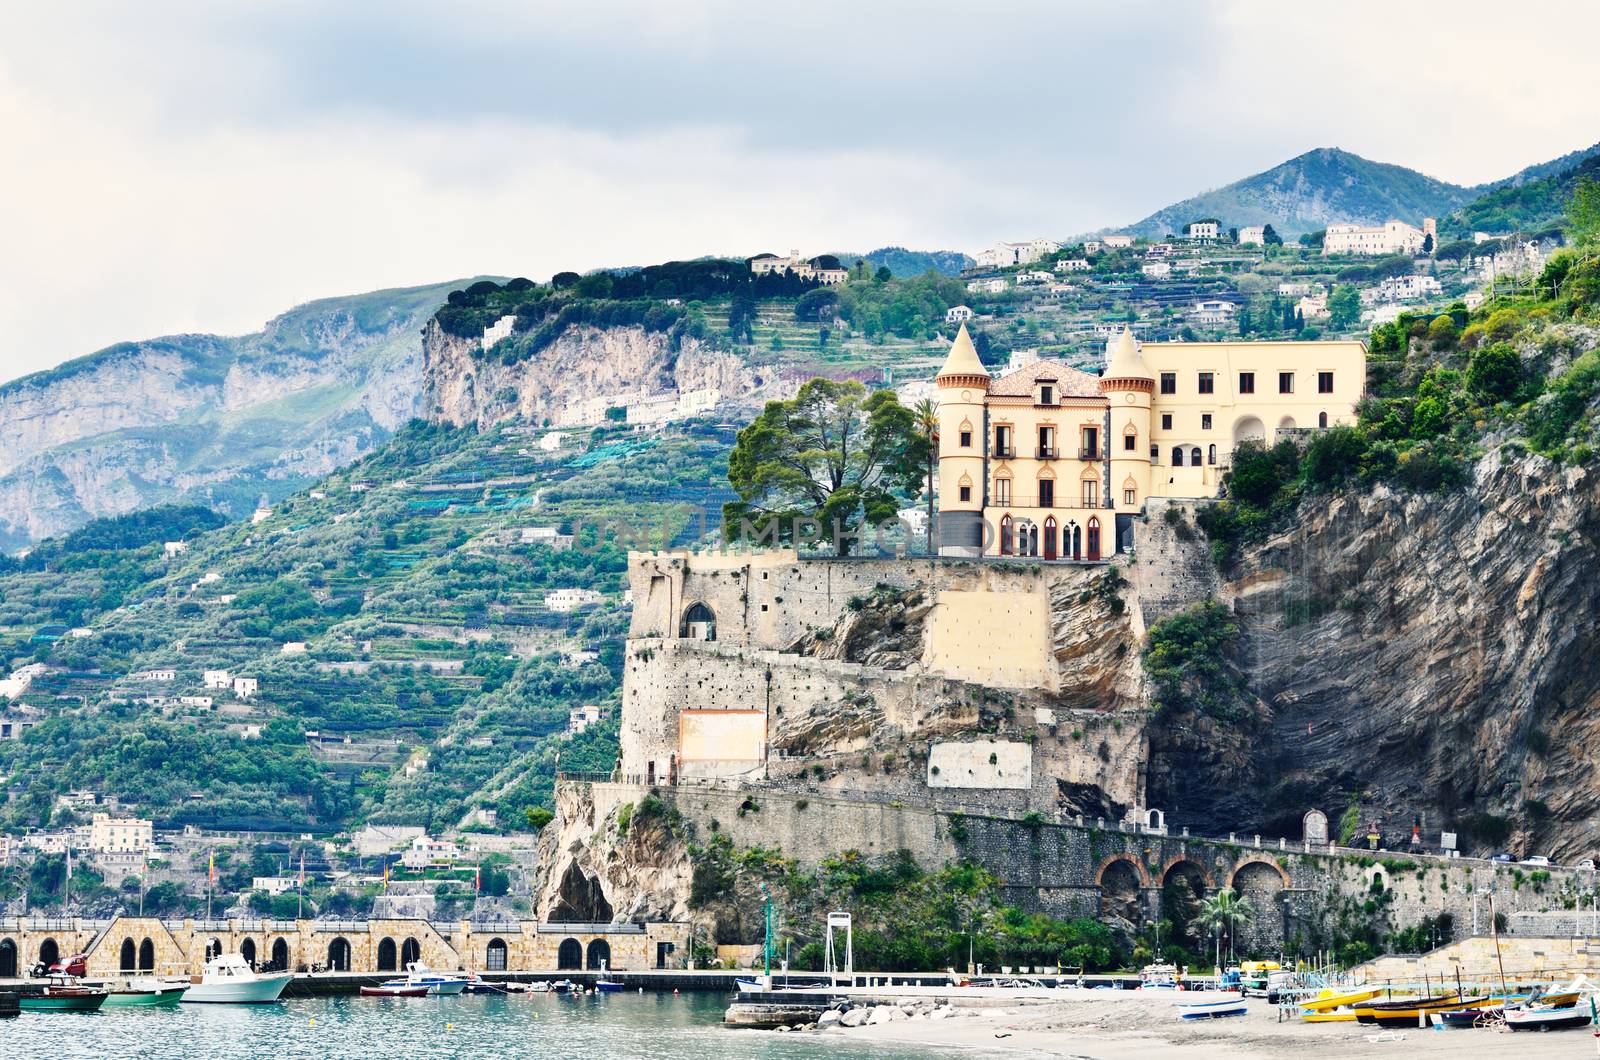 Amalfi coast by Naples, south Italy